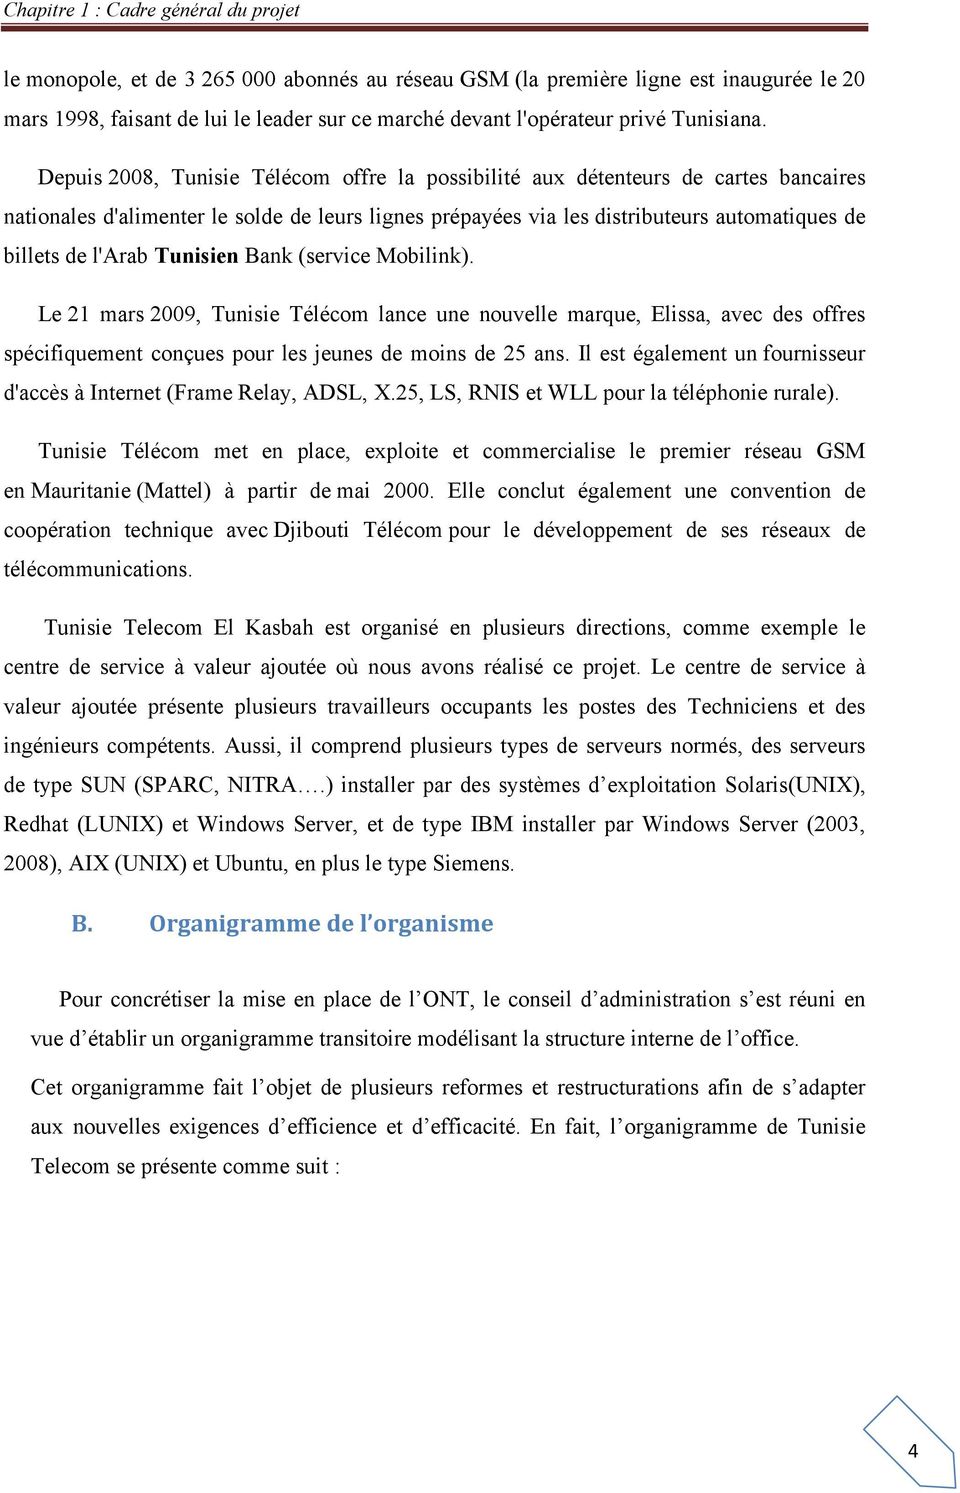 Depuis 2008, Tunisie Télécom offre la possibilité aux détenteurs de cartes bancaires nationales d'alimenter le solde de leurs lignes prépayées via les distributeurs automatiques de billets de l'arab